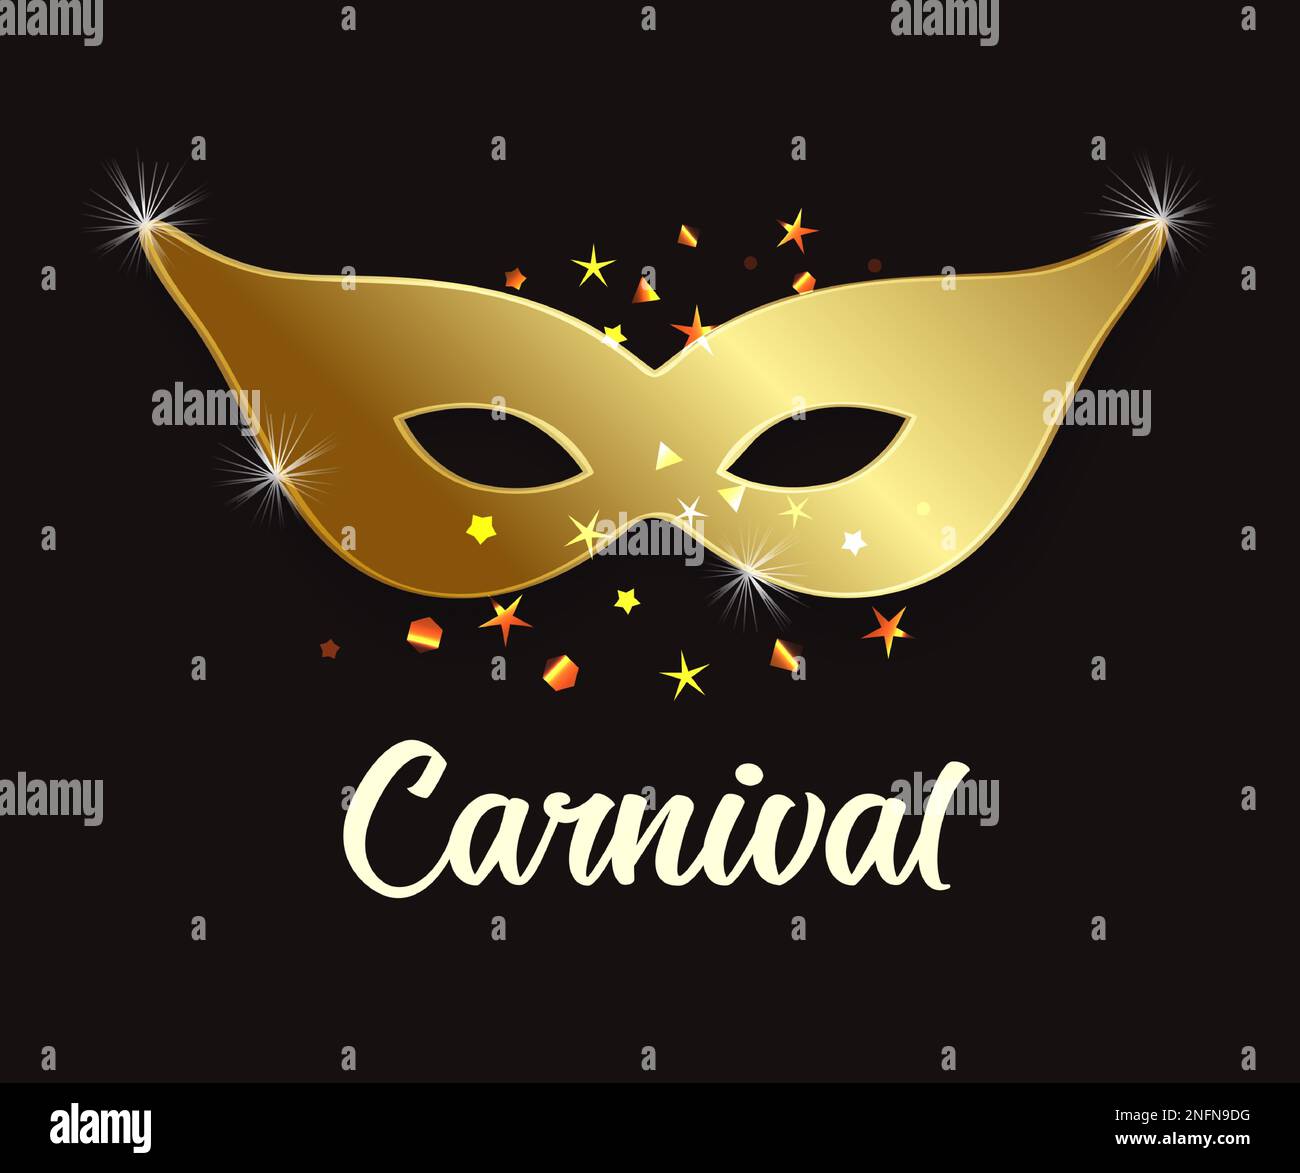 Masque de carnaval doré sur fond noir. Holiday Purim, symbole juif traditionnel. Illustration vectorielle Mardi gras Illustration de Vecteur